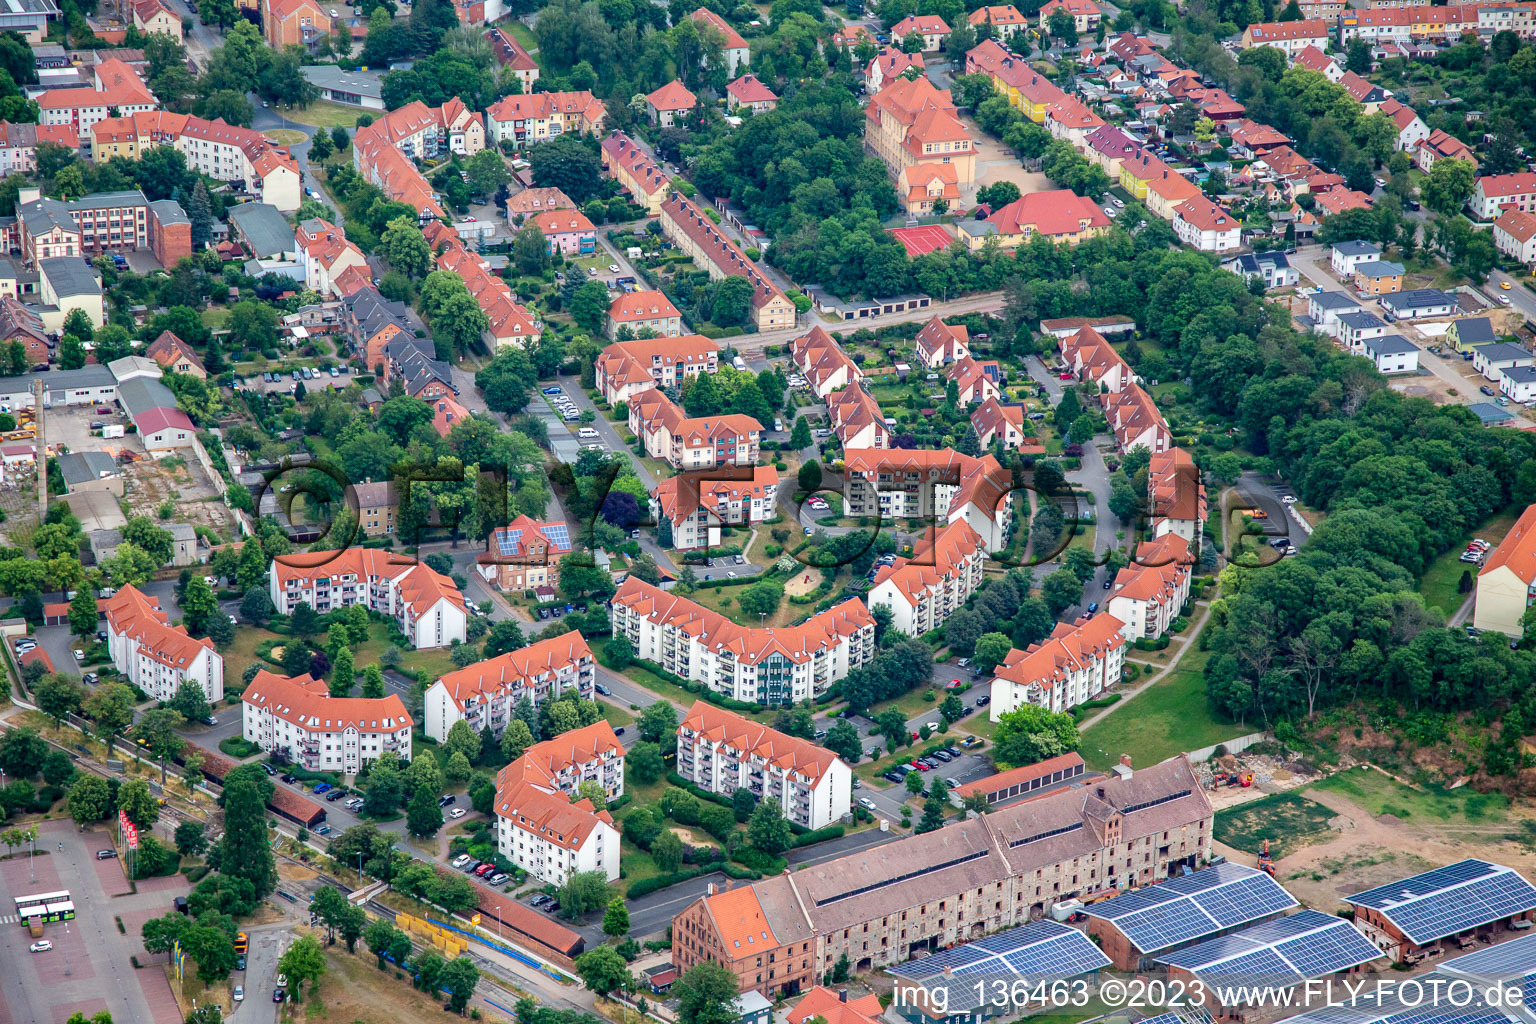 Vue aérienne de Mettestr à Quedlinburg dans le département Saxe-Anhalt, Allemagne